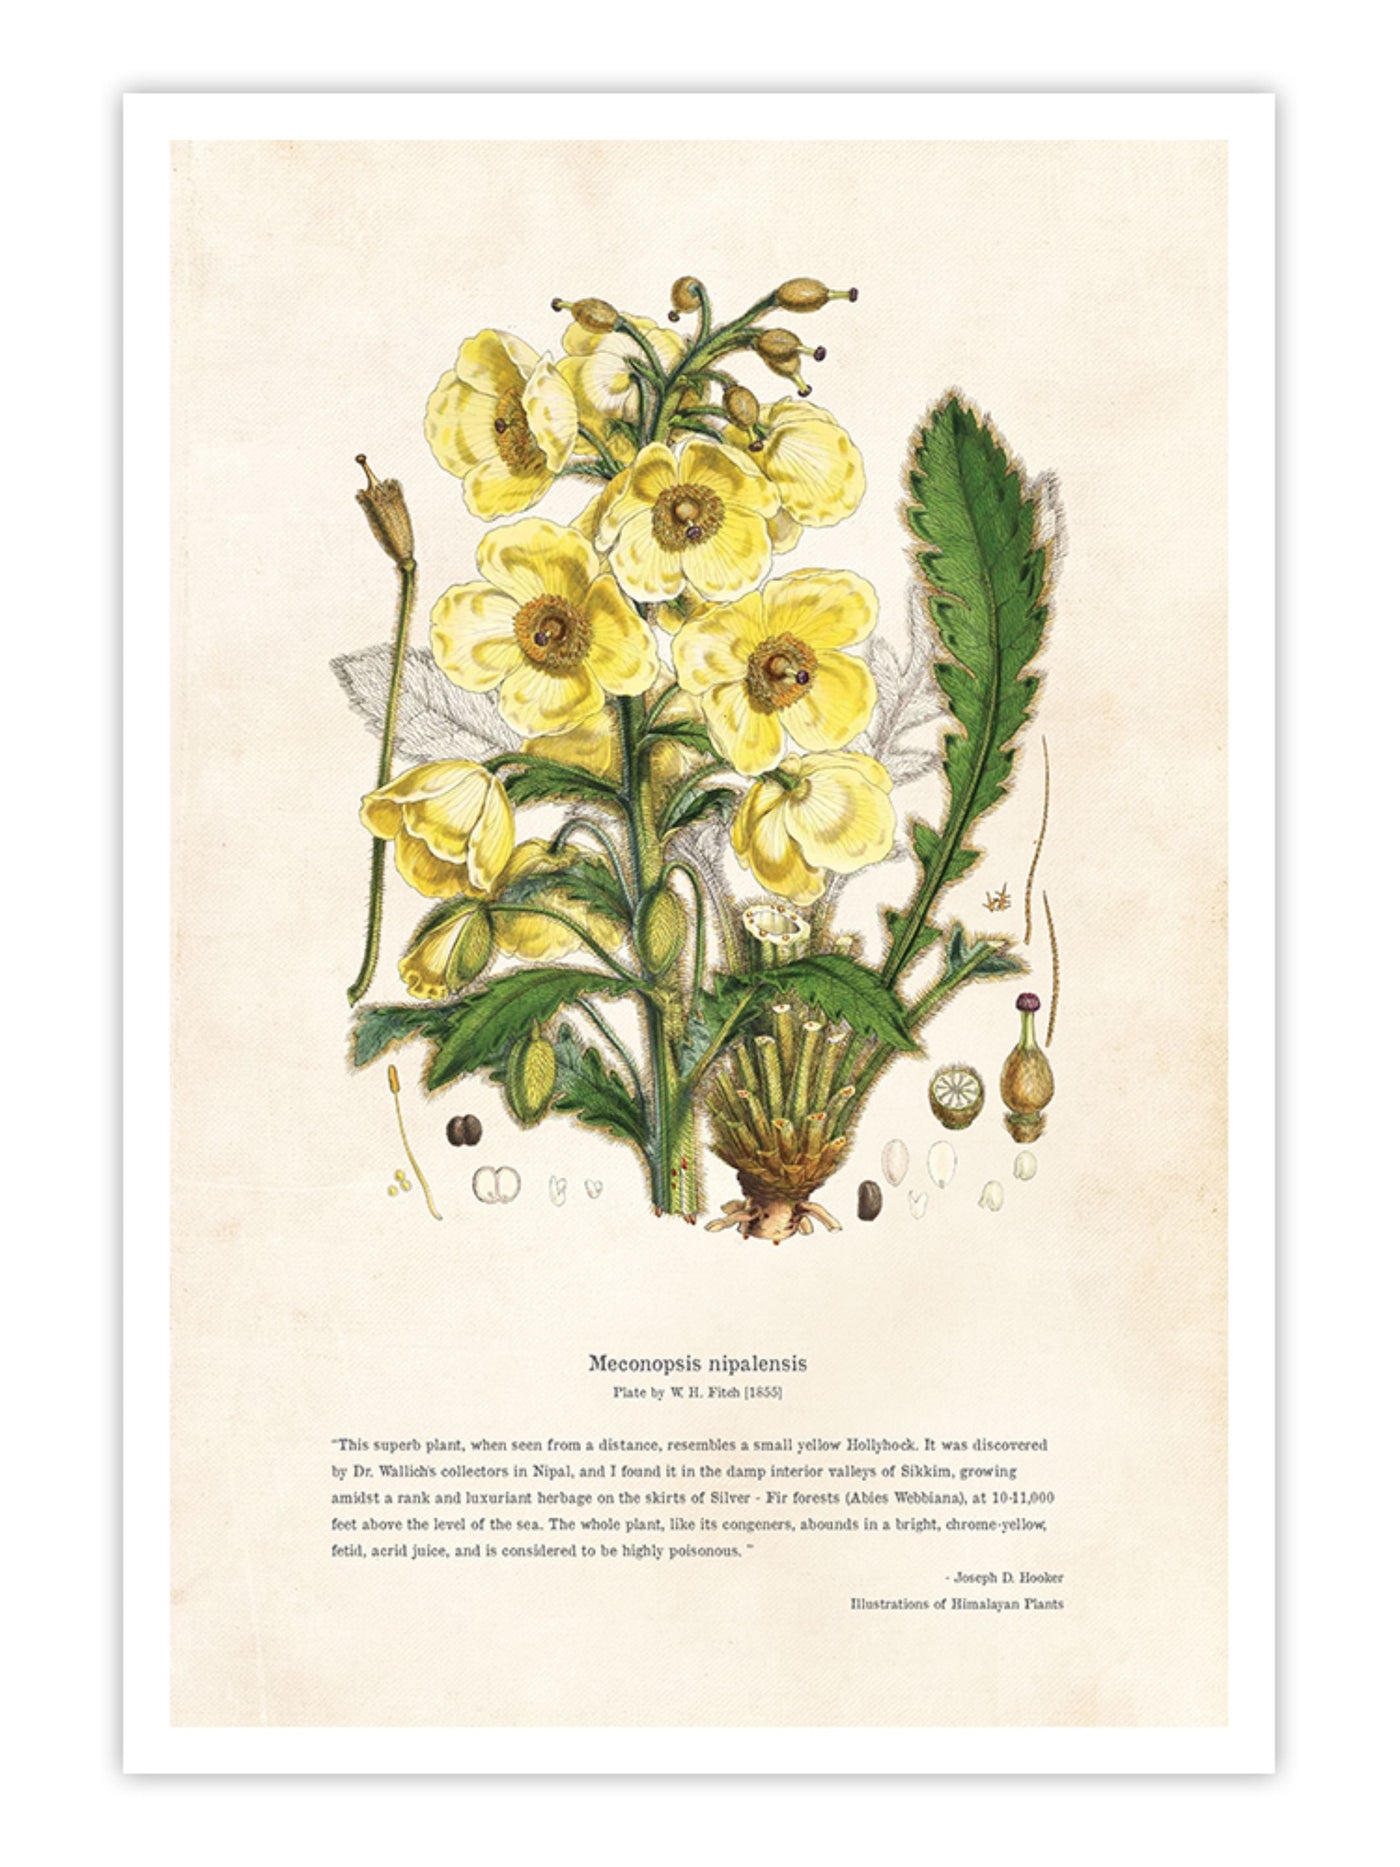 Wall Prints - Himalayan Plants - Meconopsis nipalensis